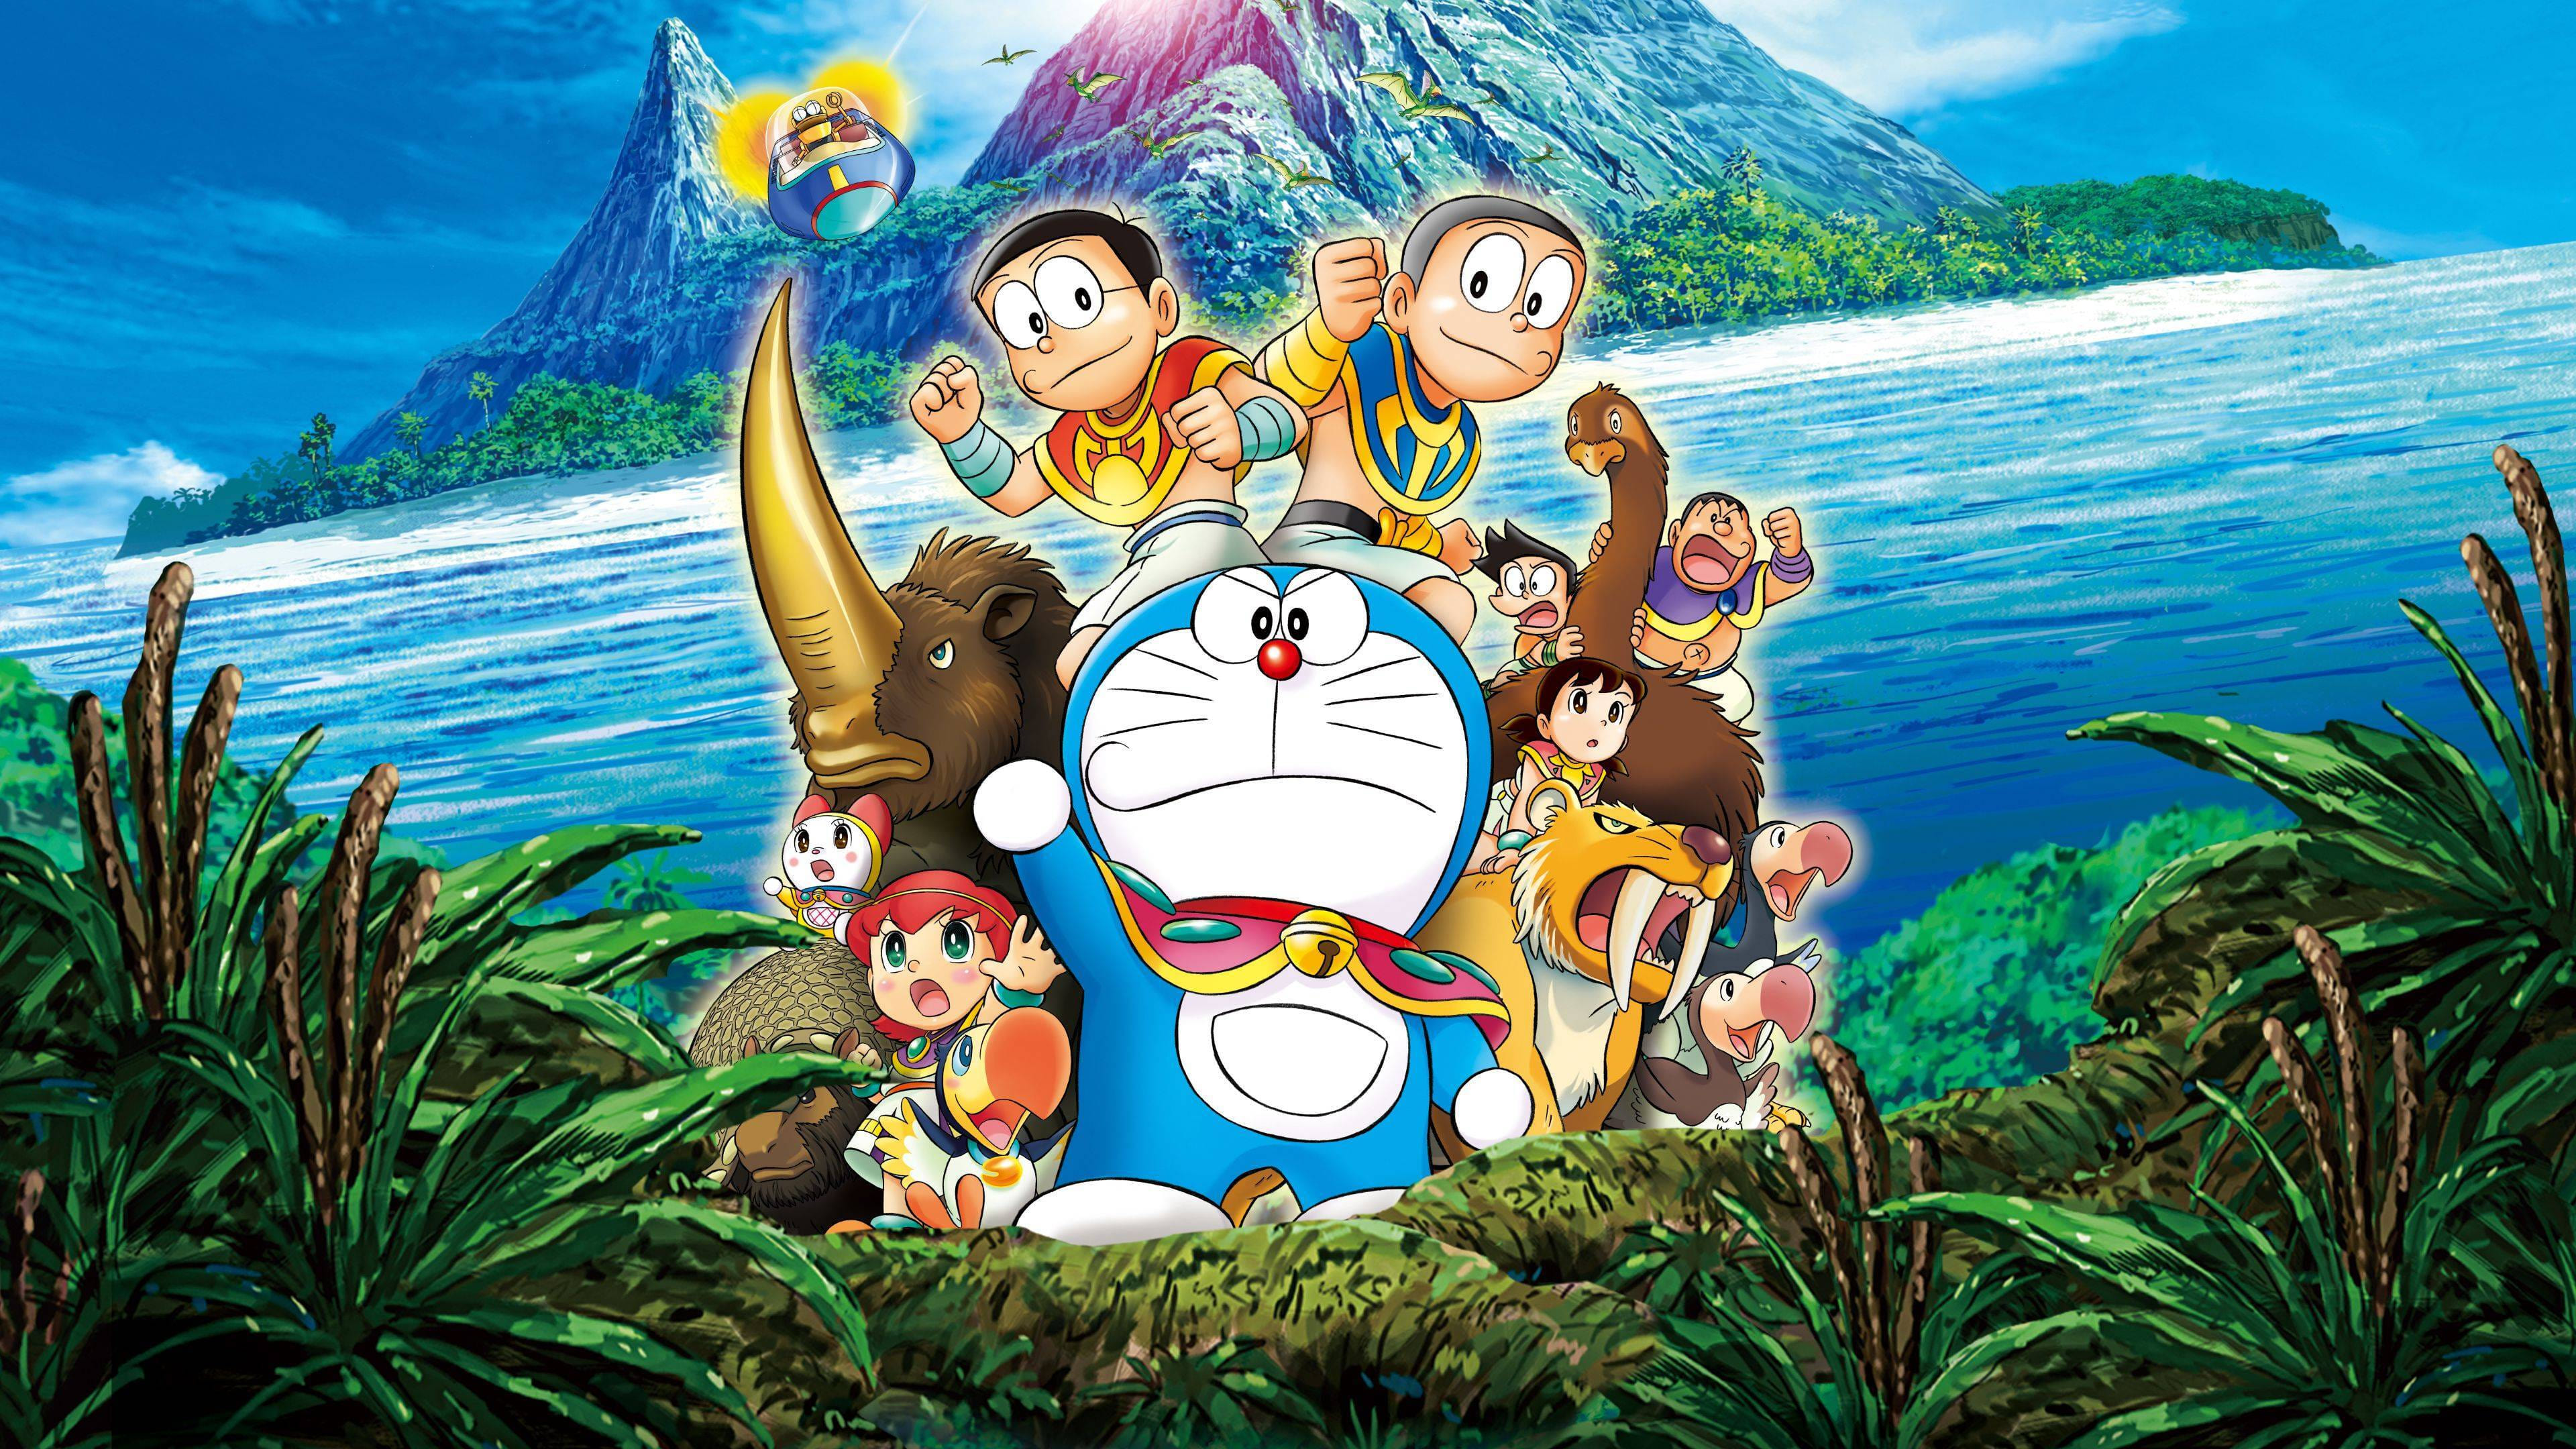 Poster Phim Doraemon: Nobita và Hòn Đảo Diệu Kì – Cuộc Phiêu Lưu Của Loài Thú (Doraemon: Nobita and the Island of Miracles - Animal Adventure)